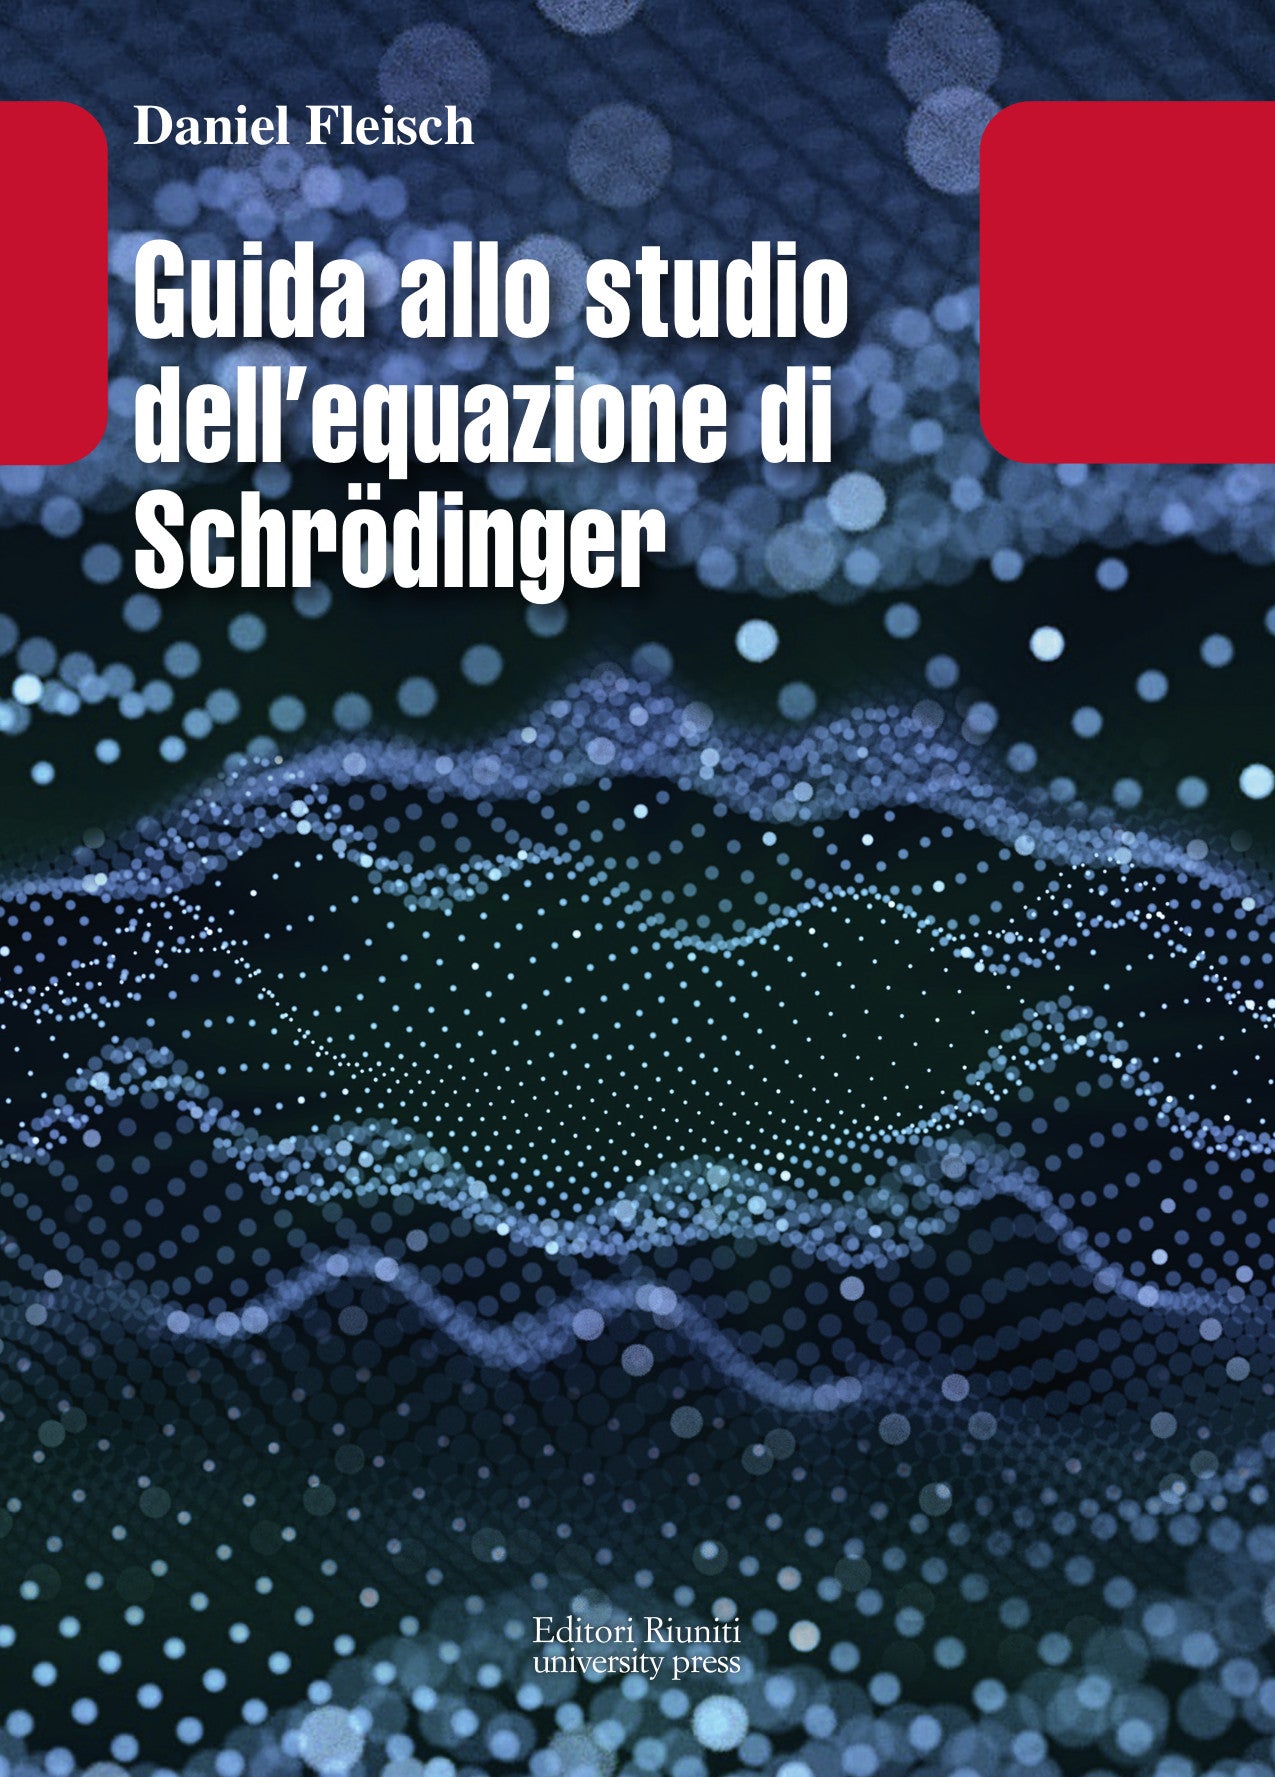 Guida allo studio dell’equazione di Schrödinger